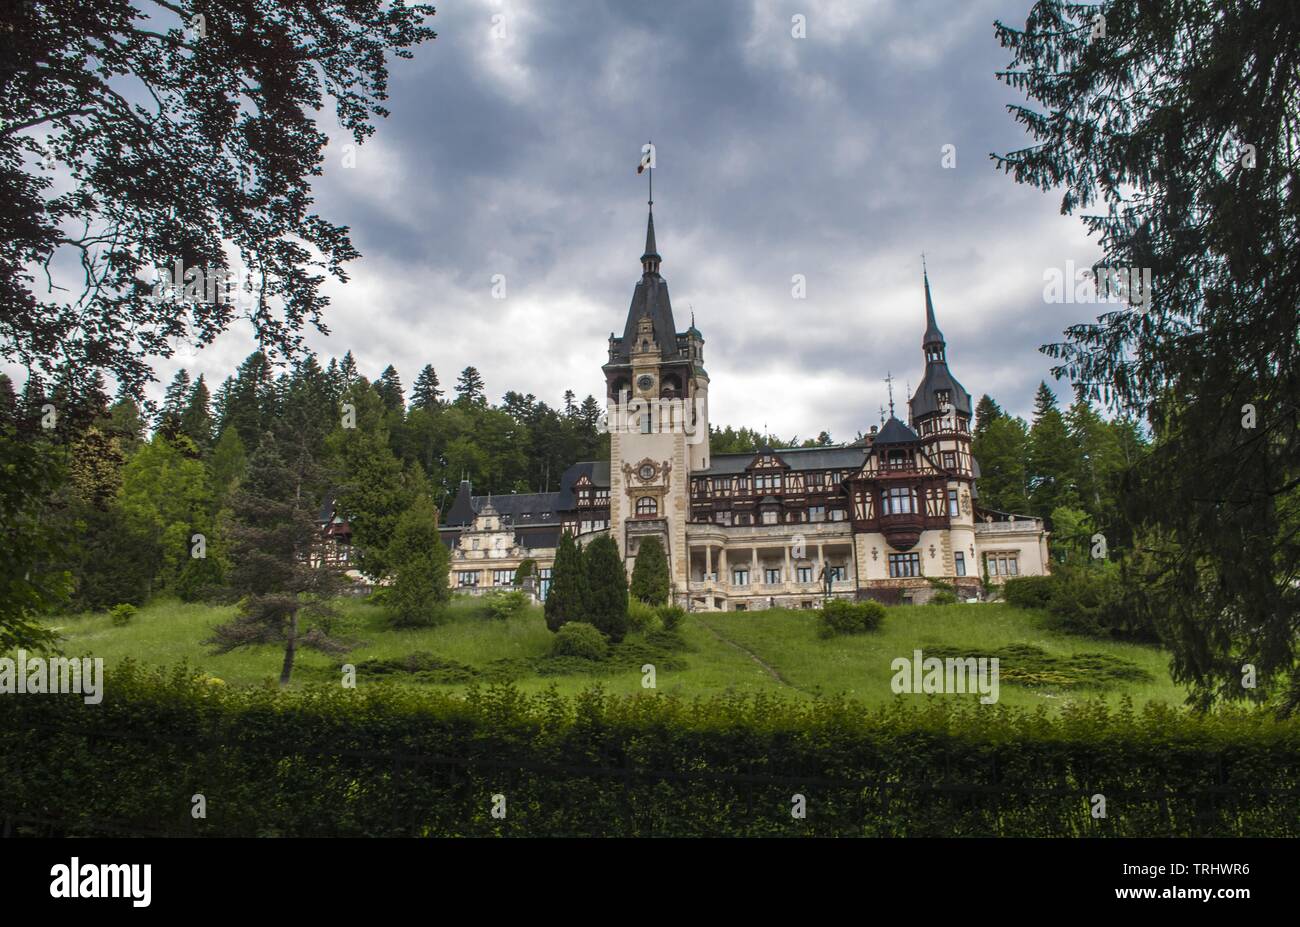 Schloss nordwestlich der Stadt Sinaia in Rumänien Photo Alamy